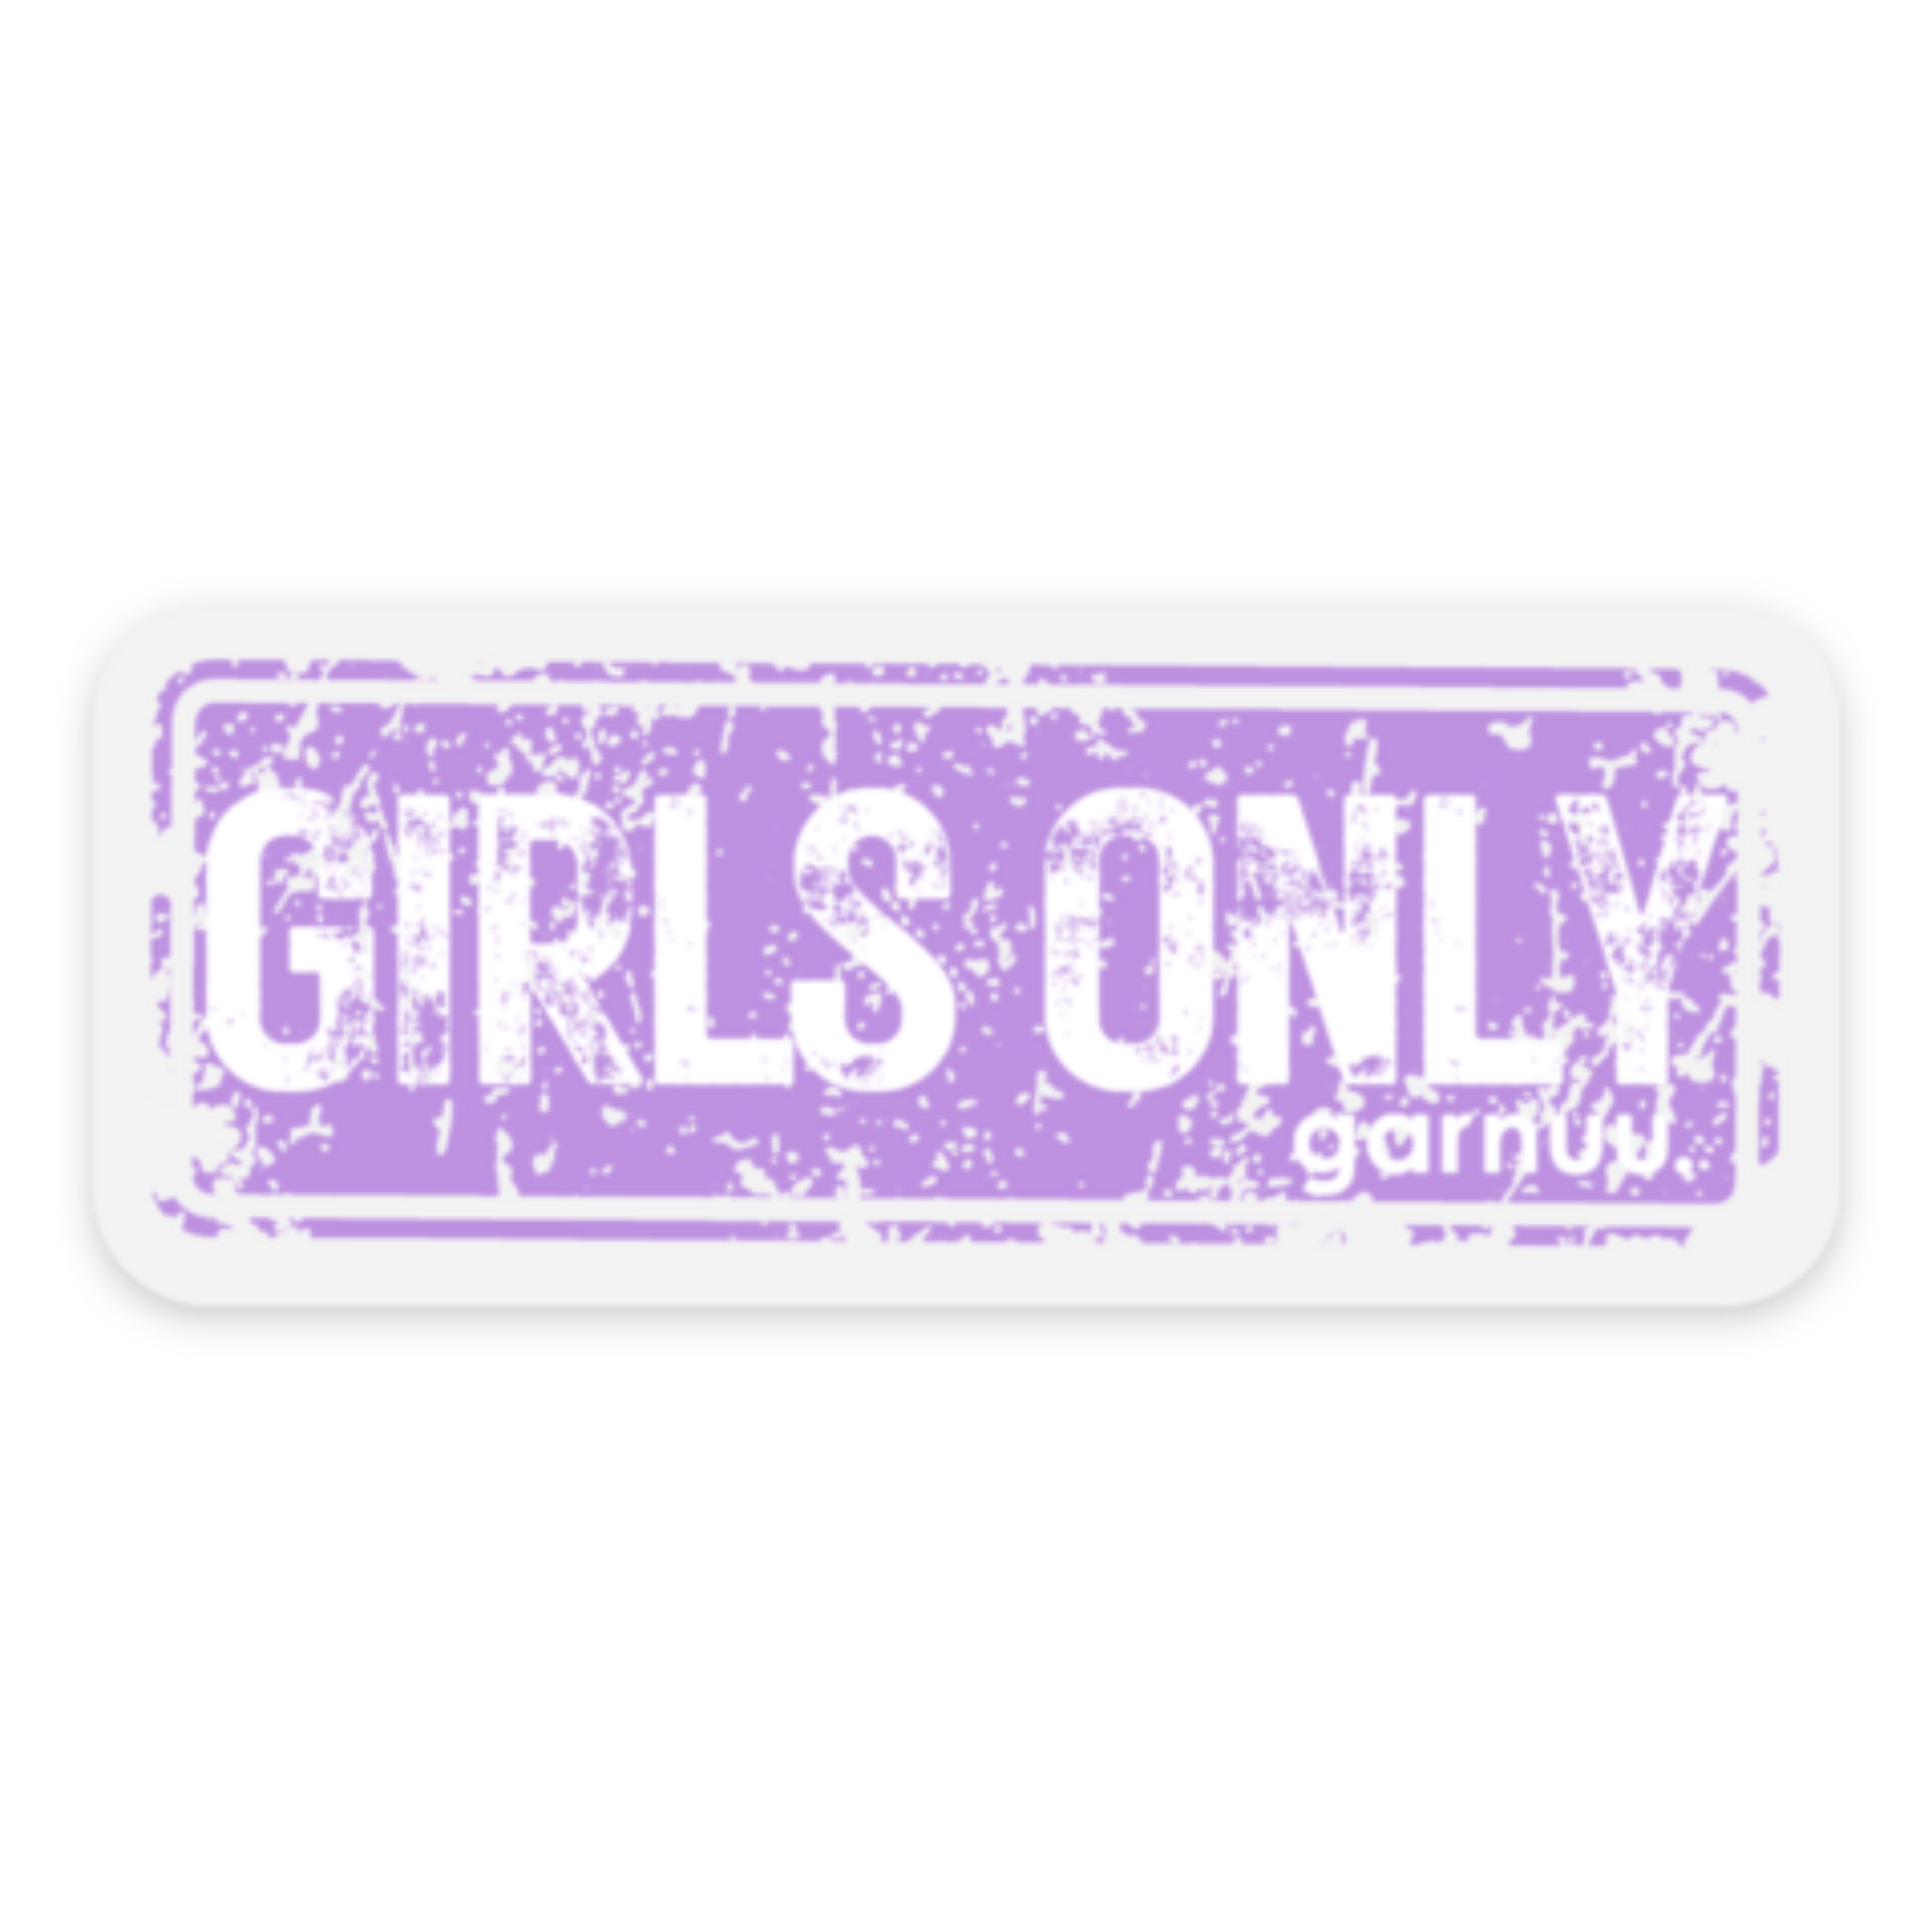 Garnuu Decorative Stickers GIRLS ONLY stamp - Die Cut Sticker